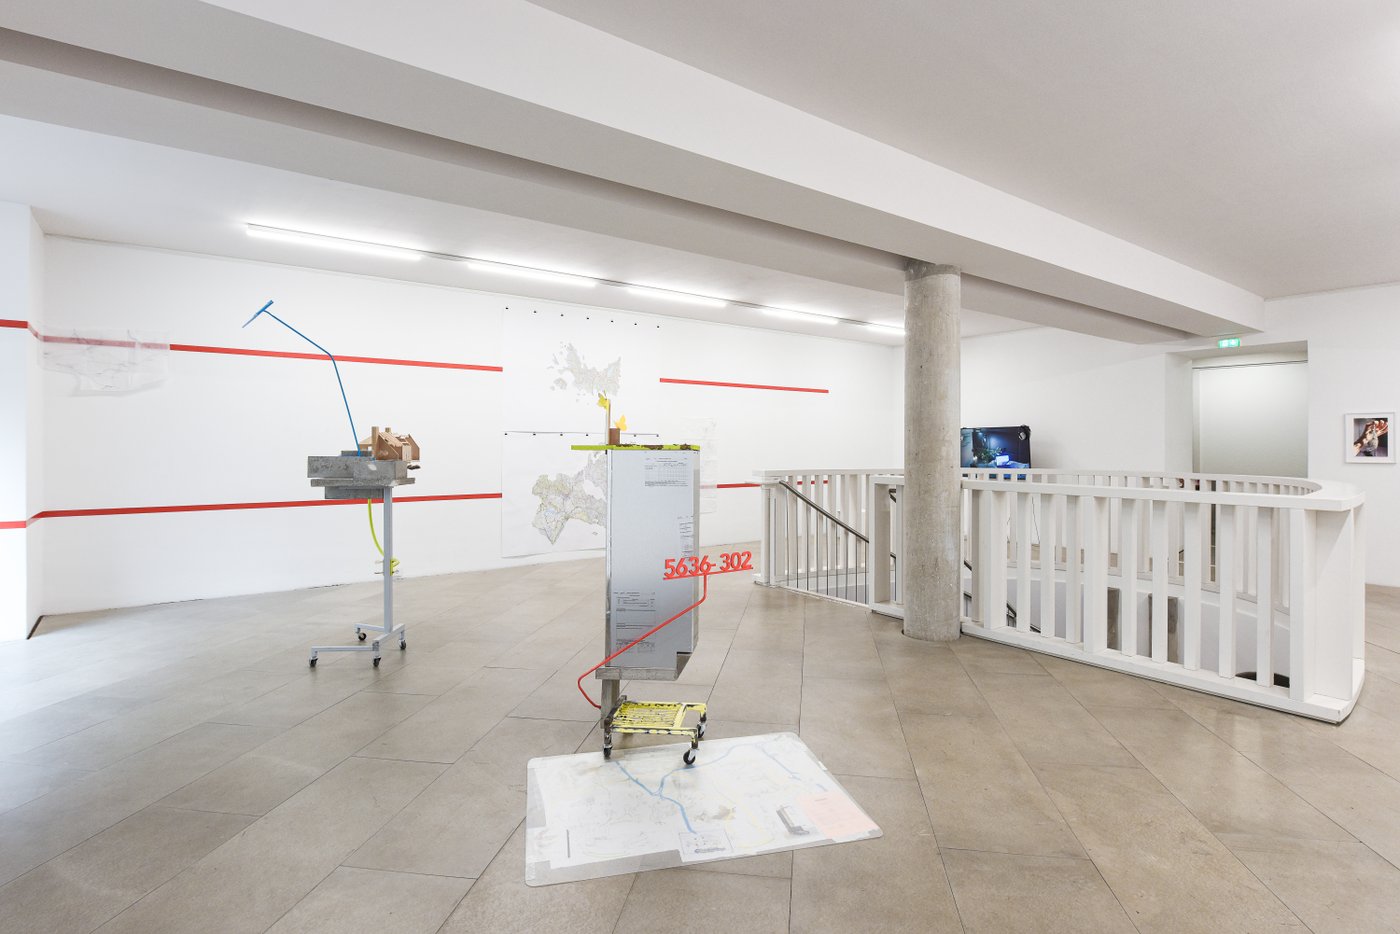 Ausstellungsansicht eines Raumes Stadtplänen auf dem Boden und an der Wand im Hintergrund, an der Wand zwei waagrechte rote Linien, im Vordergrund zwei Rollwägen mit Baumodellen.